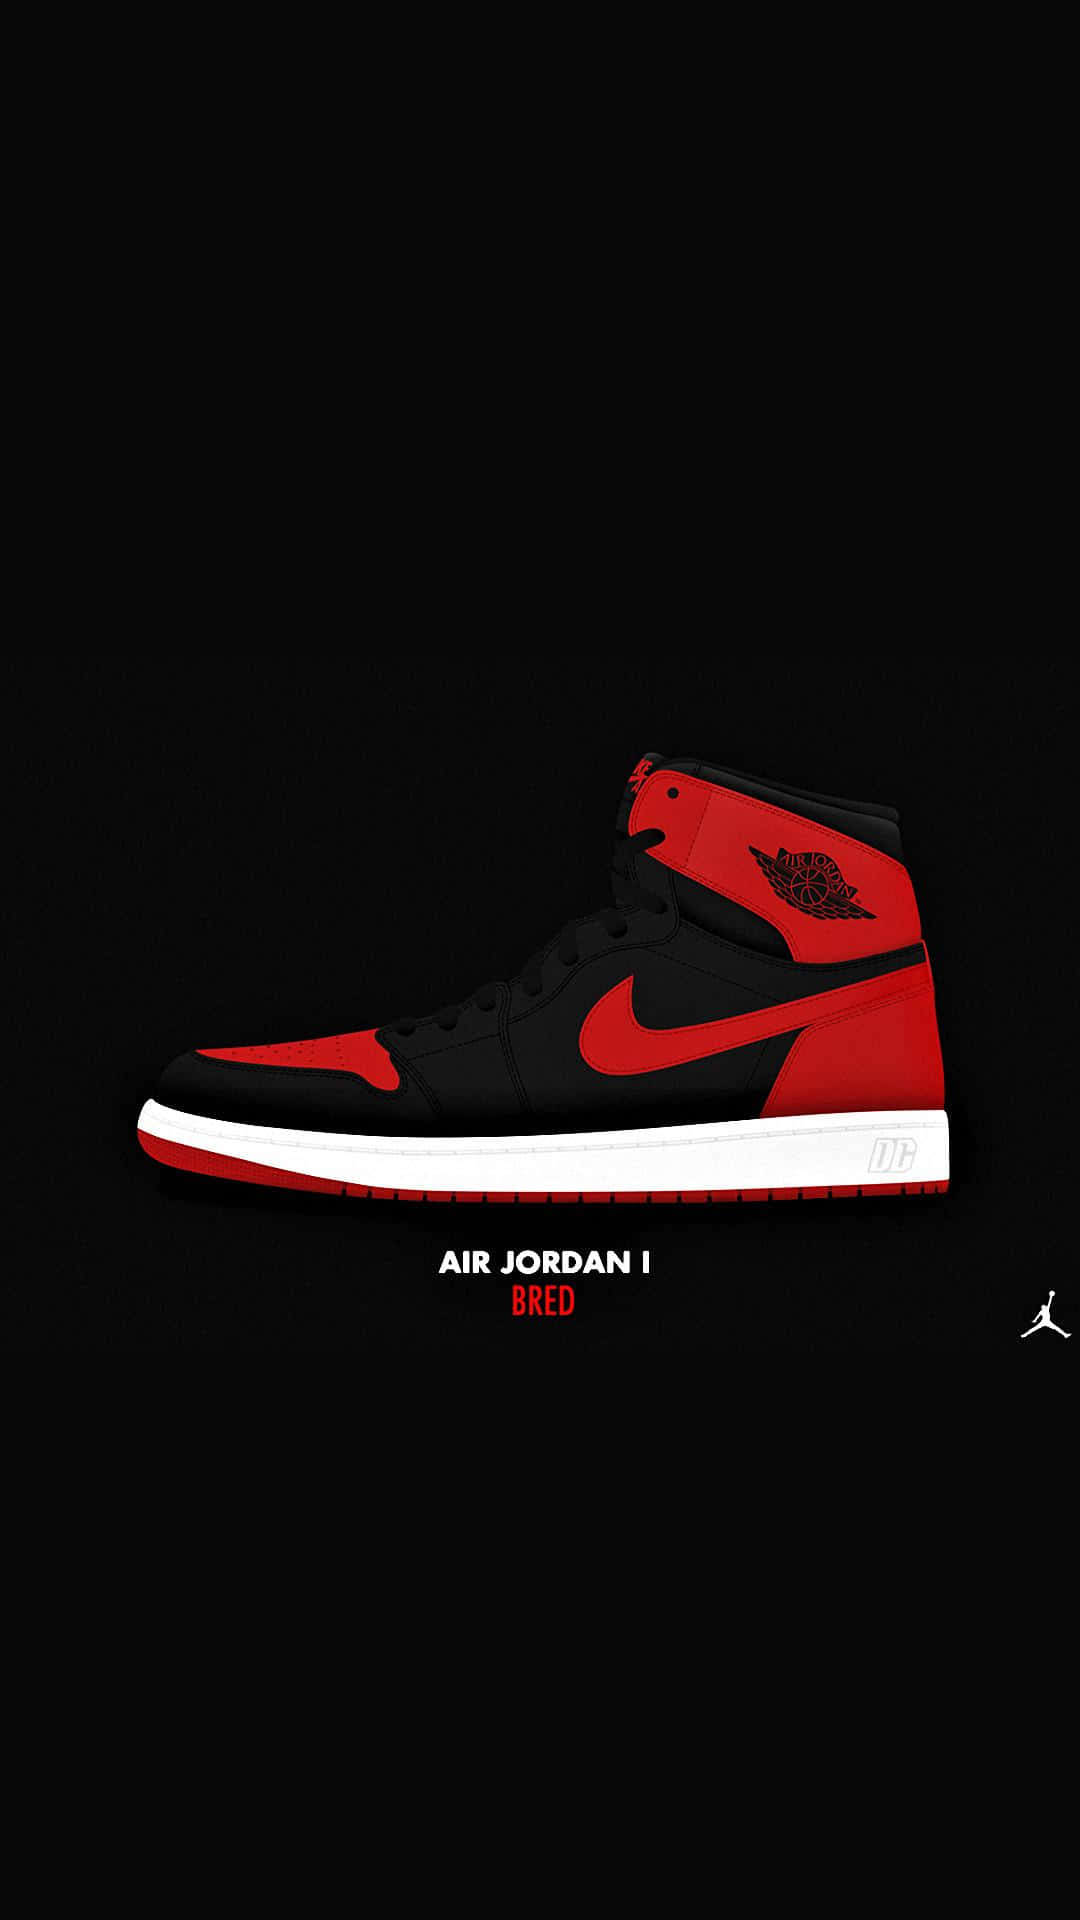 Bold and Red Nike Jordan Air 1 Shoe Poster Wallpaper